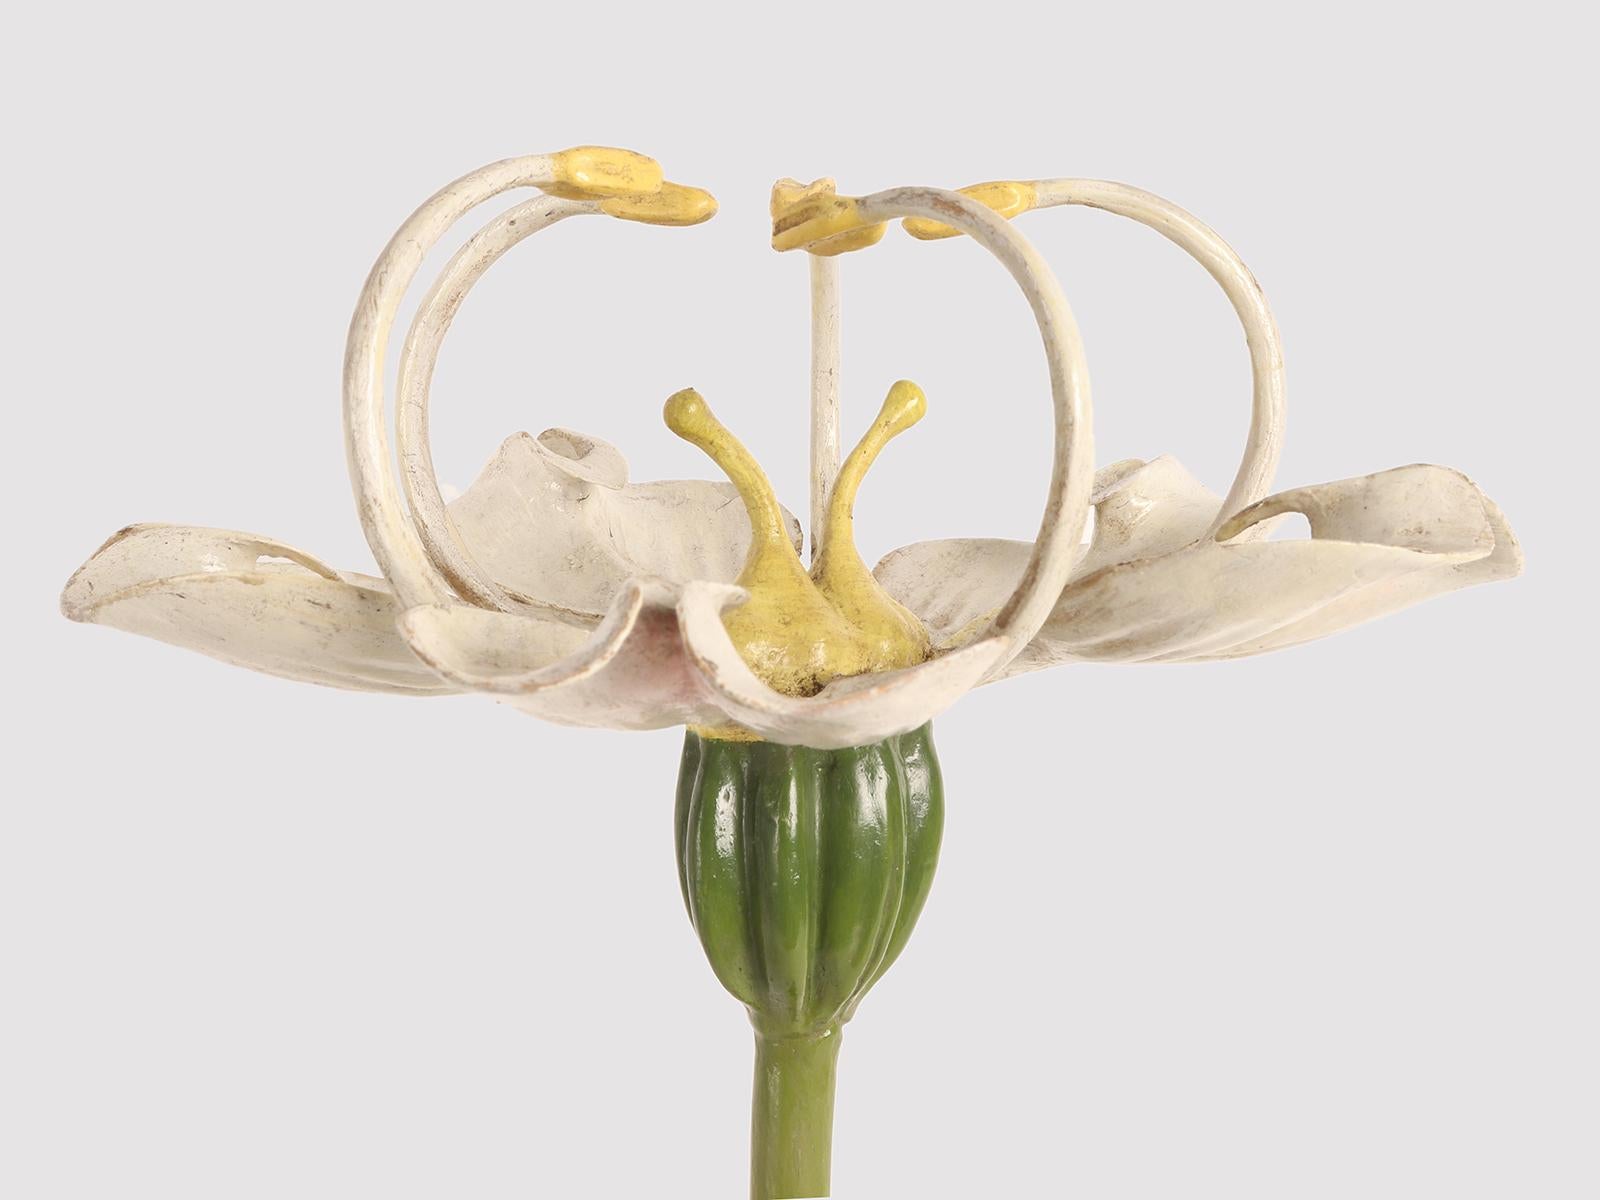 Rare modèle botanique du Brendel, Conium maculatum N.60 (Umbelliferae). La base ronde en bois ébonisé accueille le modèle botanique qui révèle la fleur de la Ciguë. Brendel, Berlin Allemagne, vers 1900.